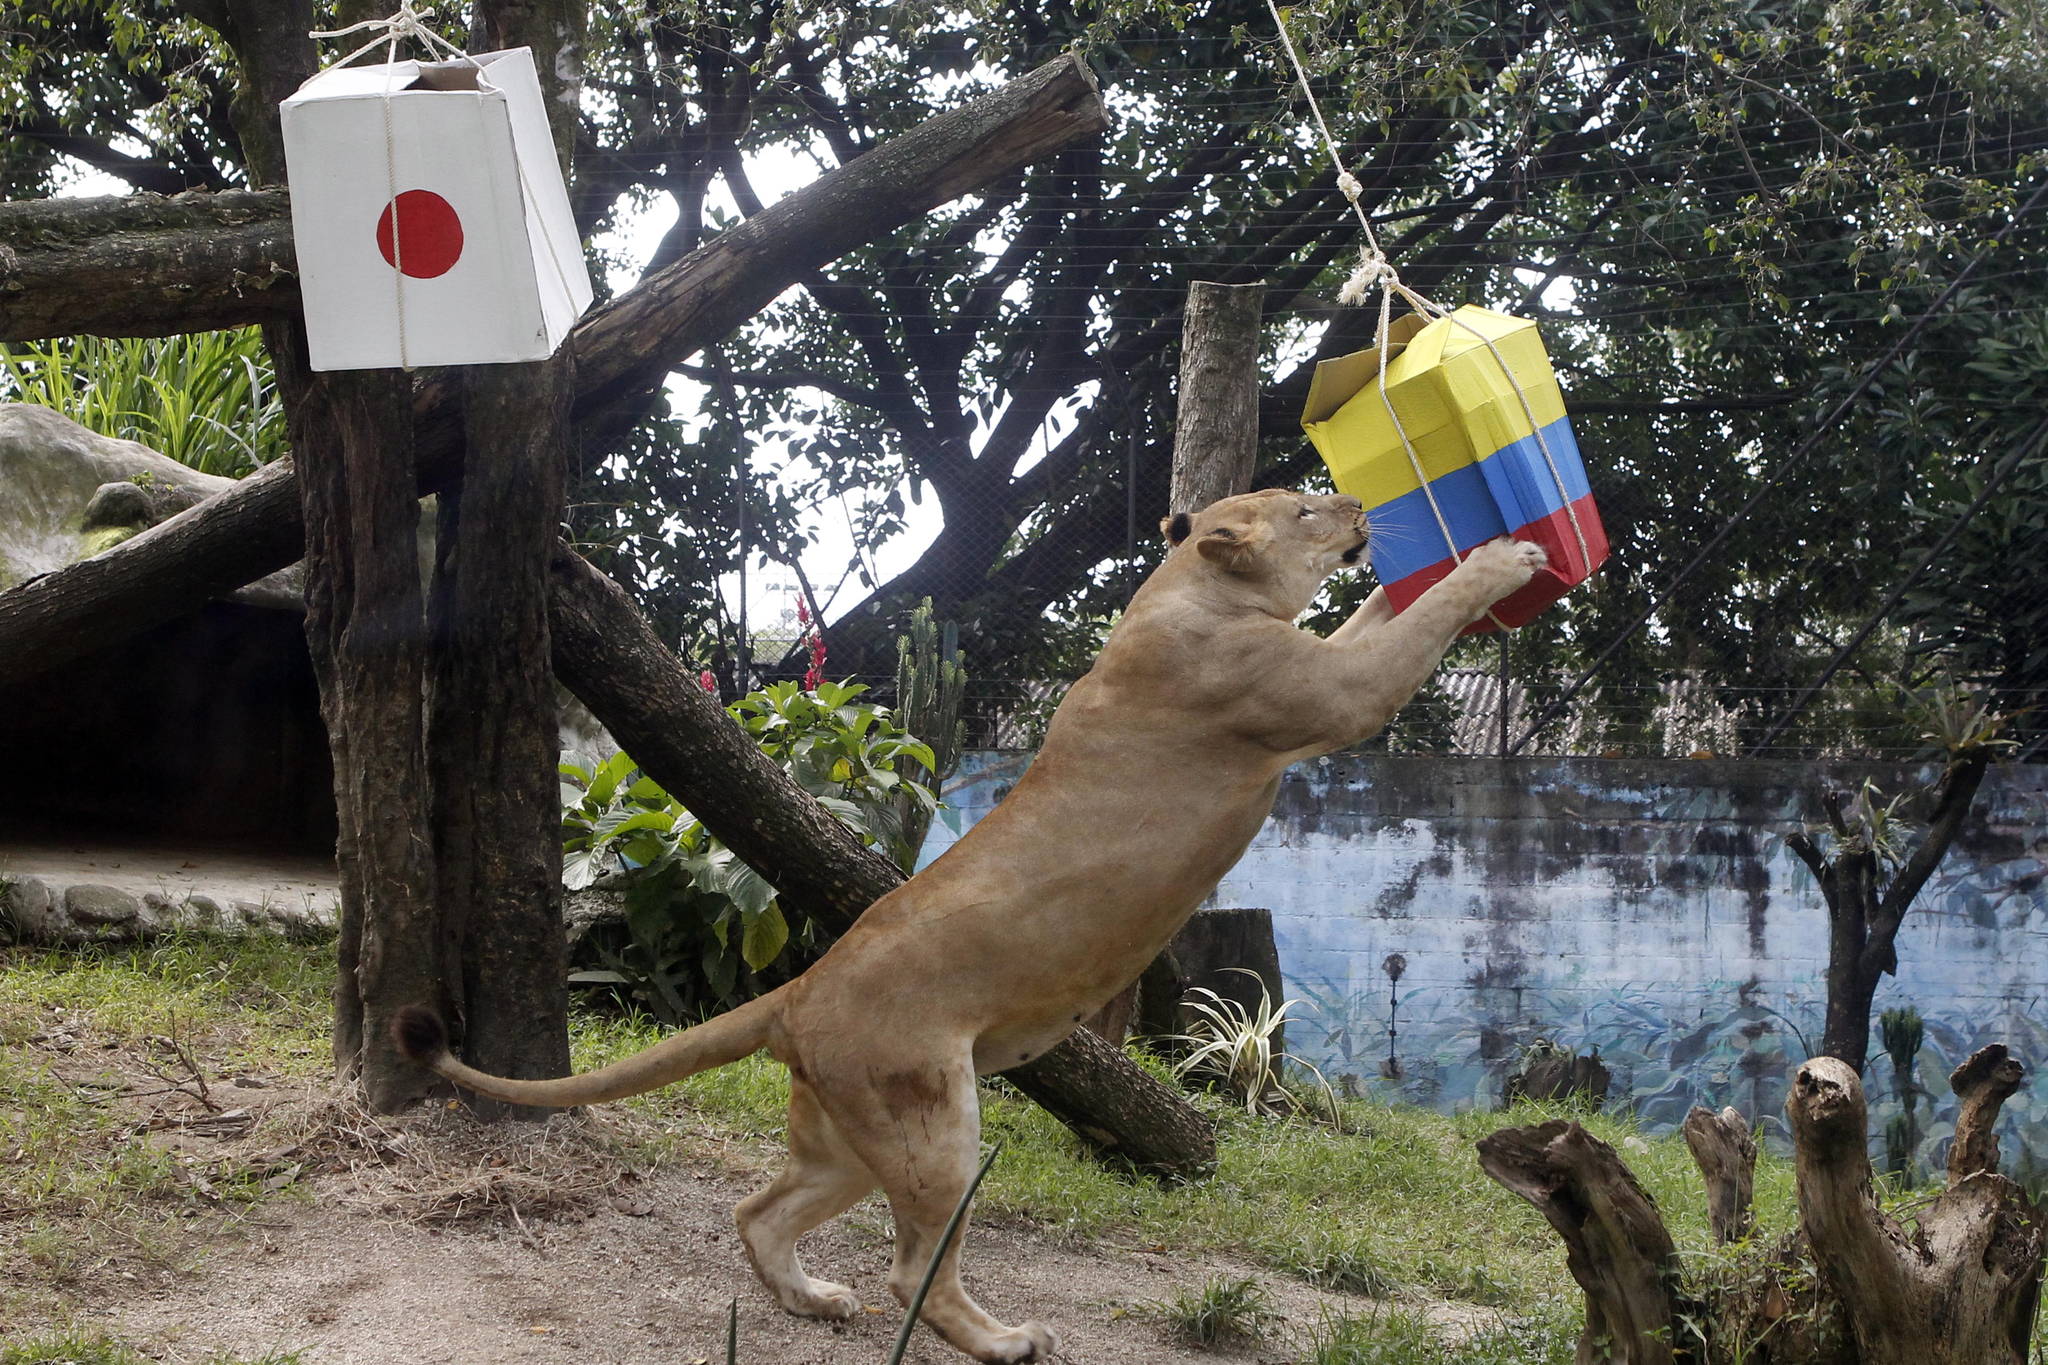 콜롬비아 메델린에 있는 산타페 동물원의 암사자 발렌티나가 15일(현지시간) 나무에 걸린 콜롬비아와 일본의 국기가 그려진 상자 중 콜롬비아 상자를 선택하고 있다. [EPA=연합뉴스]